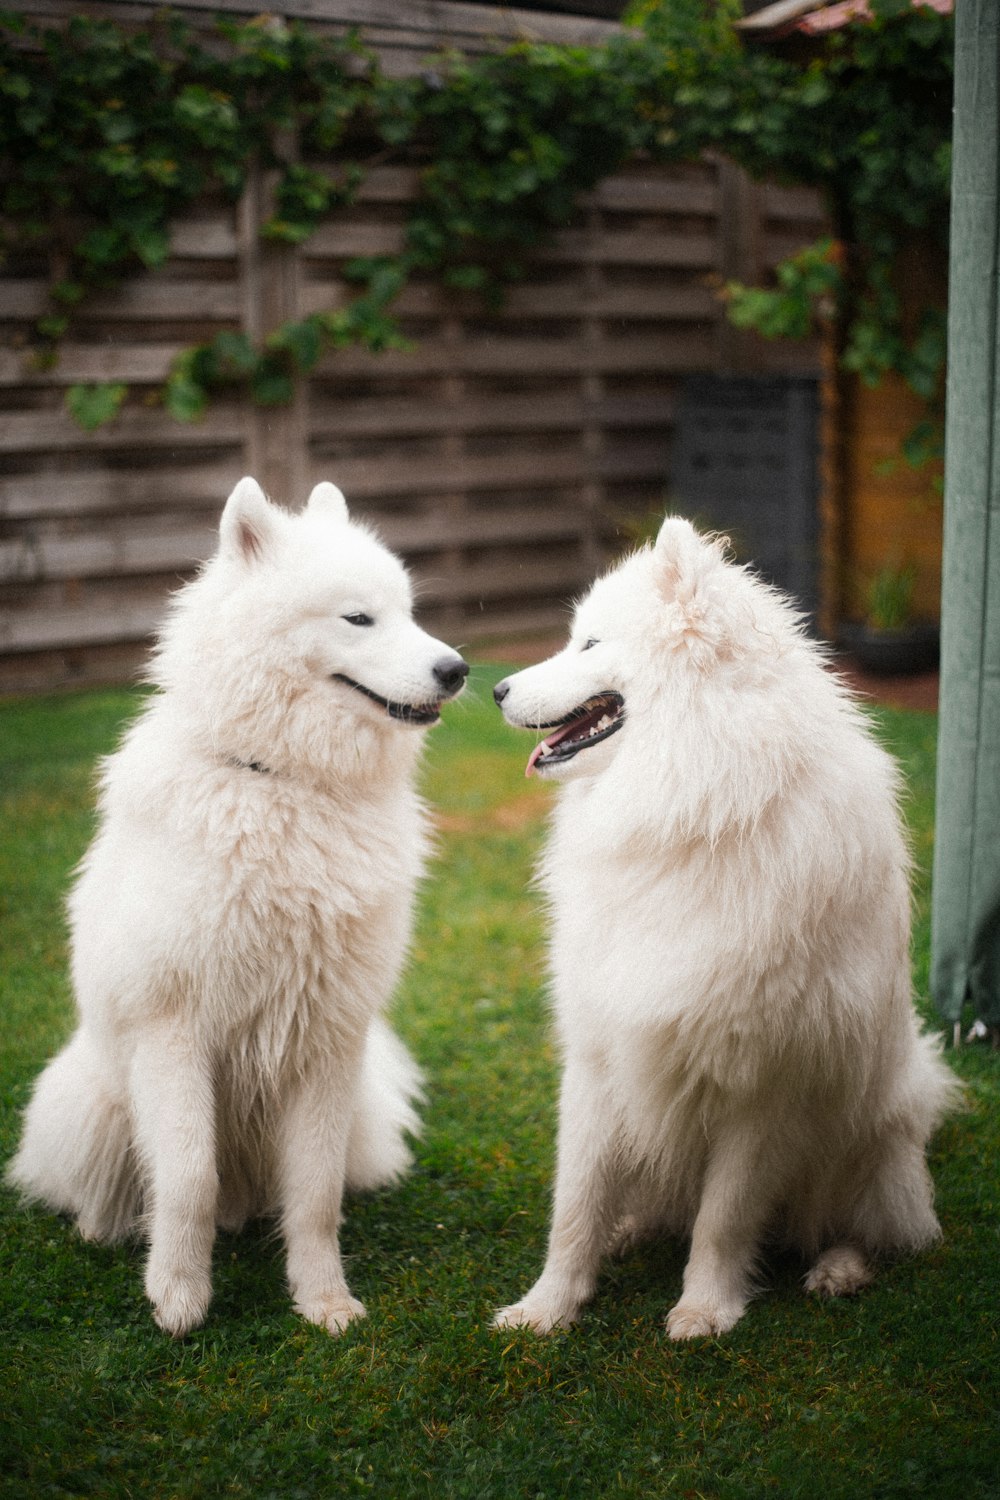 풀밭에 앉아 있는 흰 개 두 마리